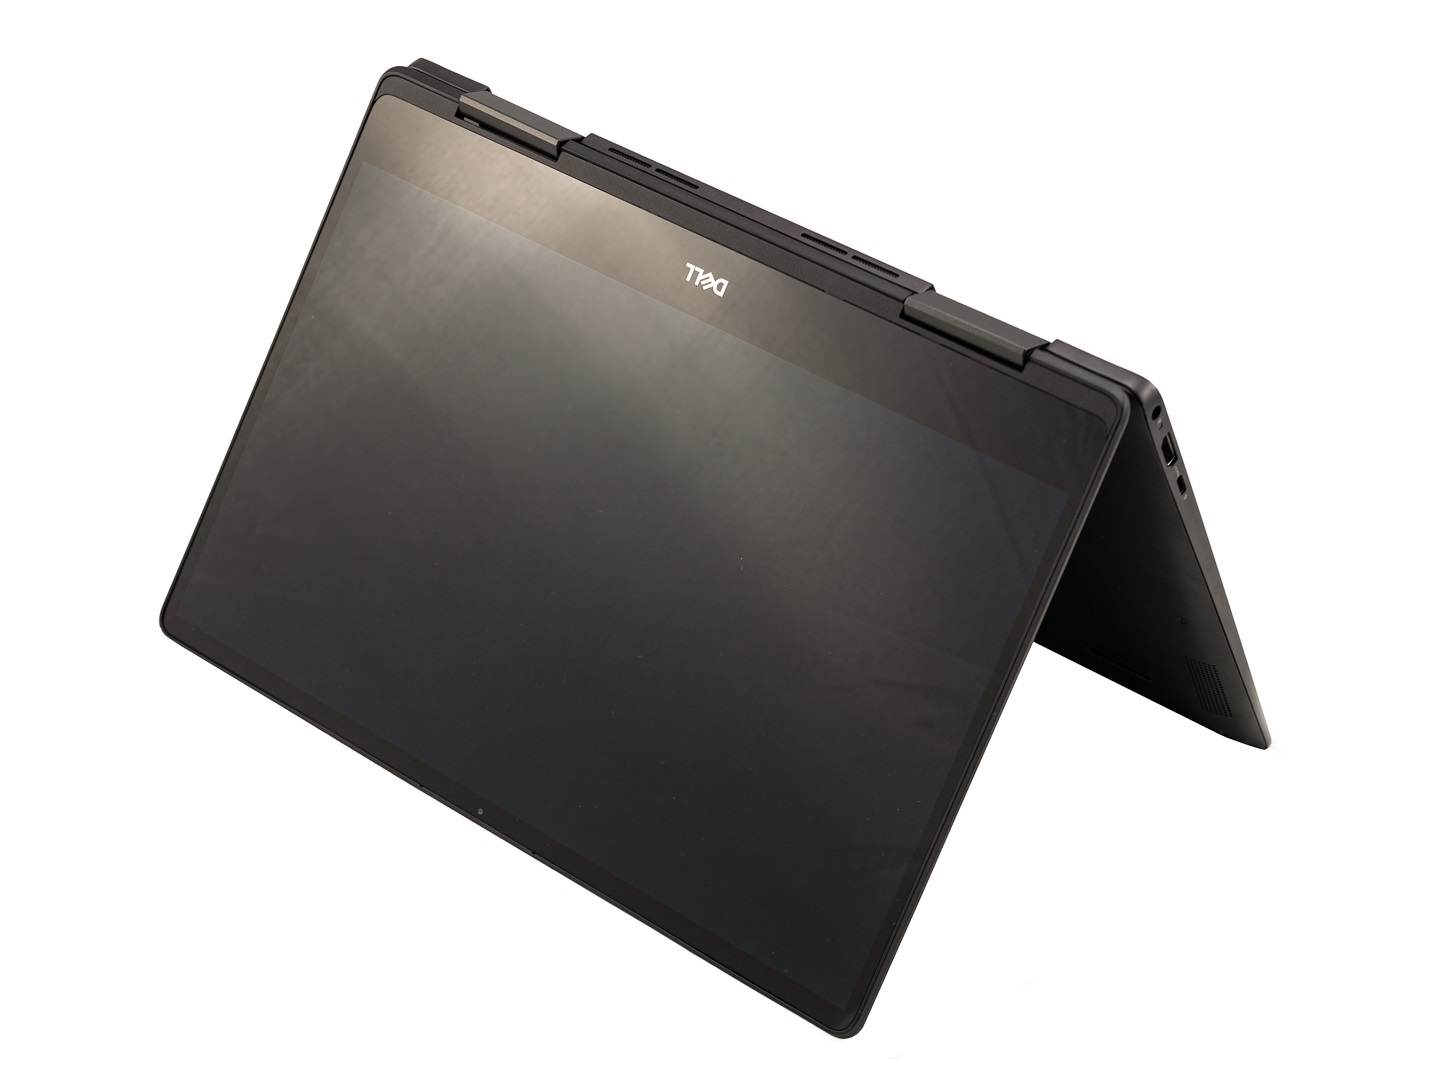 Đánh giá Dell Inspiron 13 7386 Black Edition 2 trong 1: Chưa thực sự xuất sắc !, trang tư vấn laptop